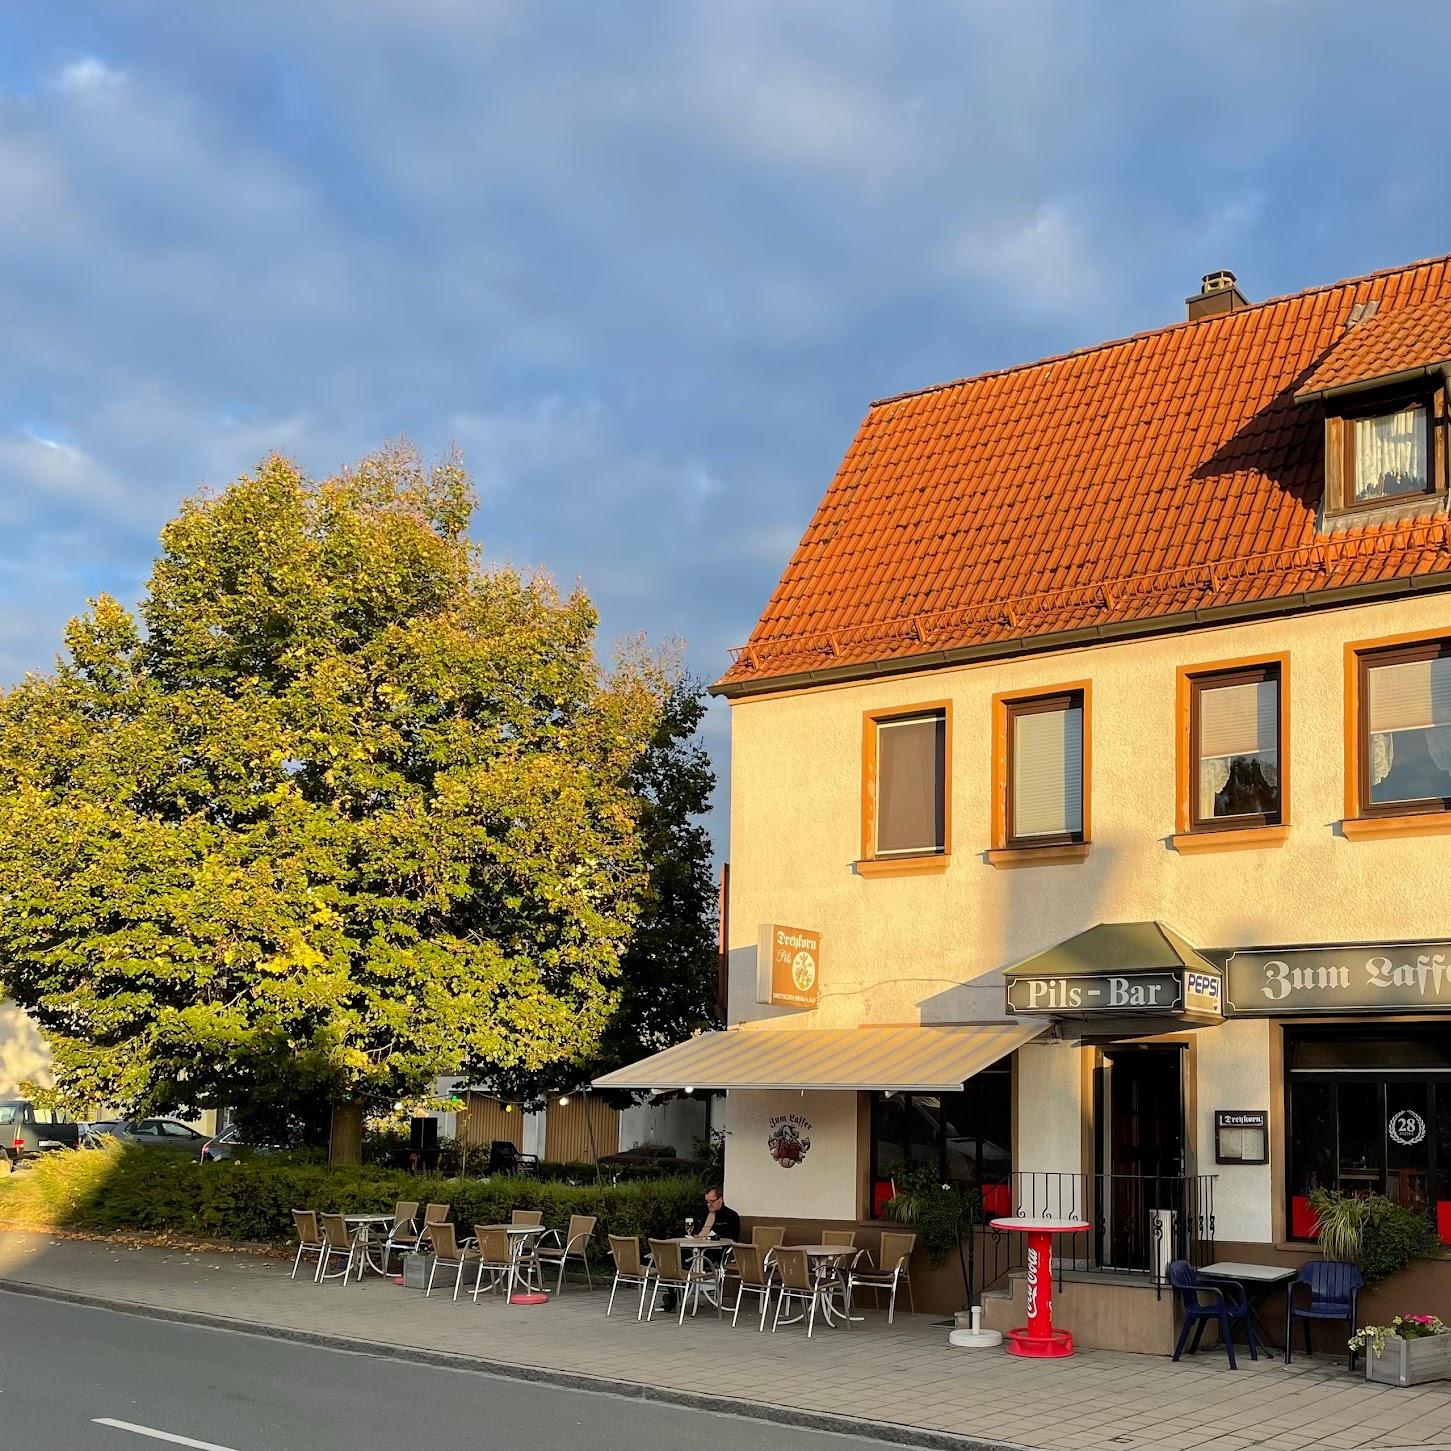 Restaurant "Zum Laffer" in Lauf an der Pegnitz